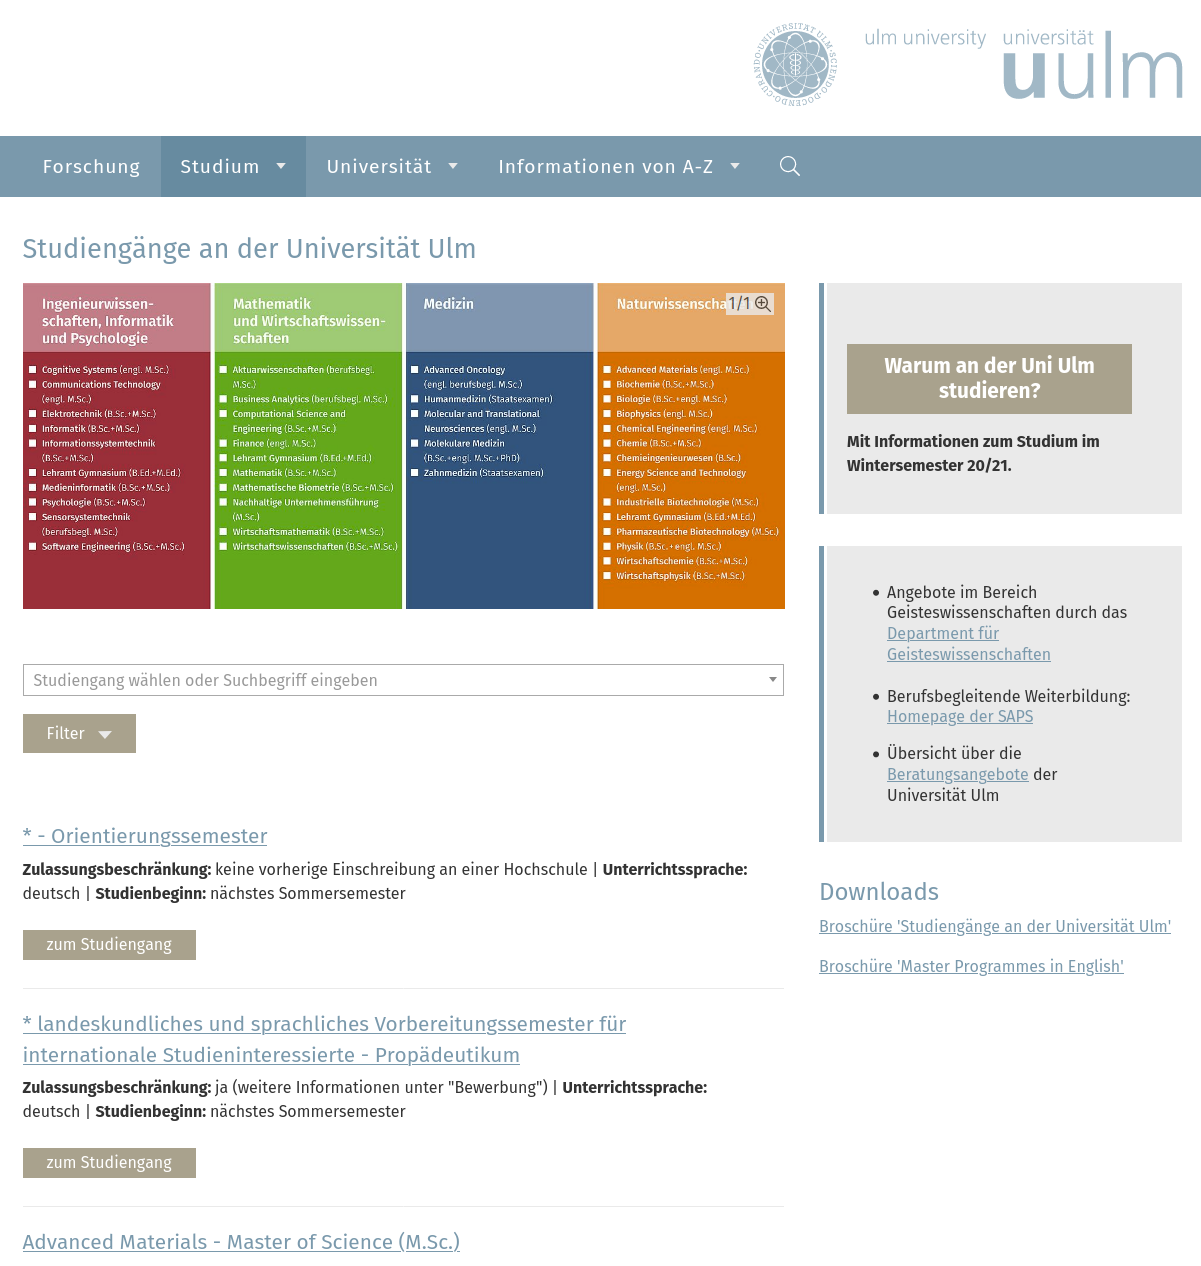 Universität Ulm: Listenansicht des Studiengangfinders